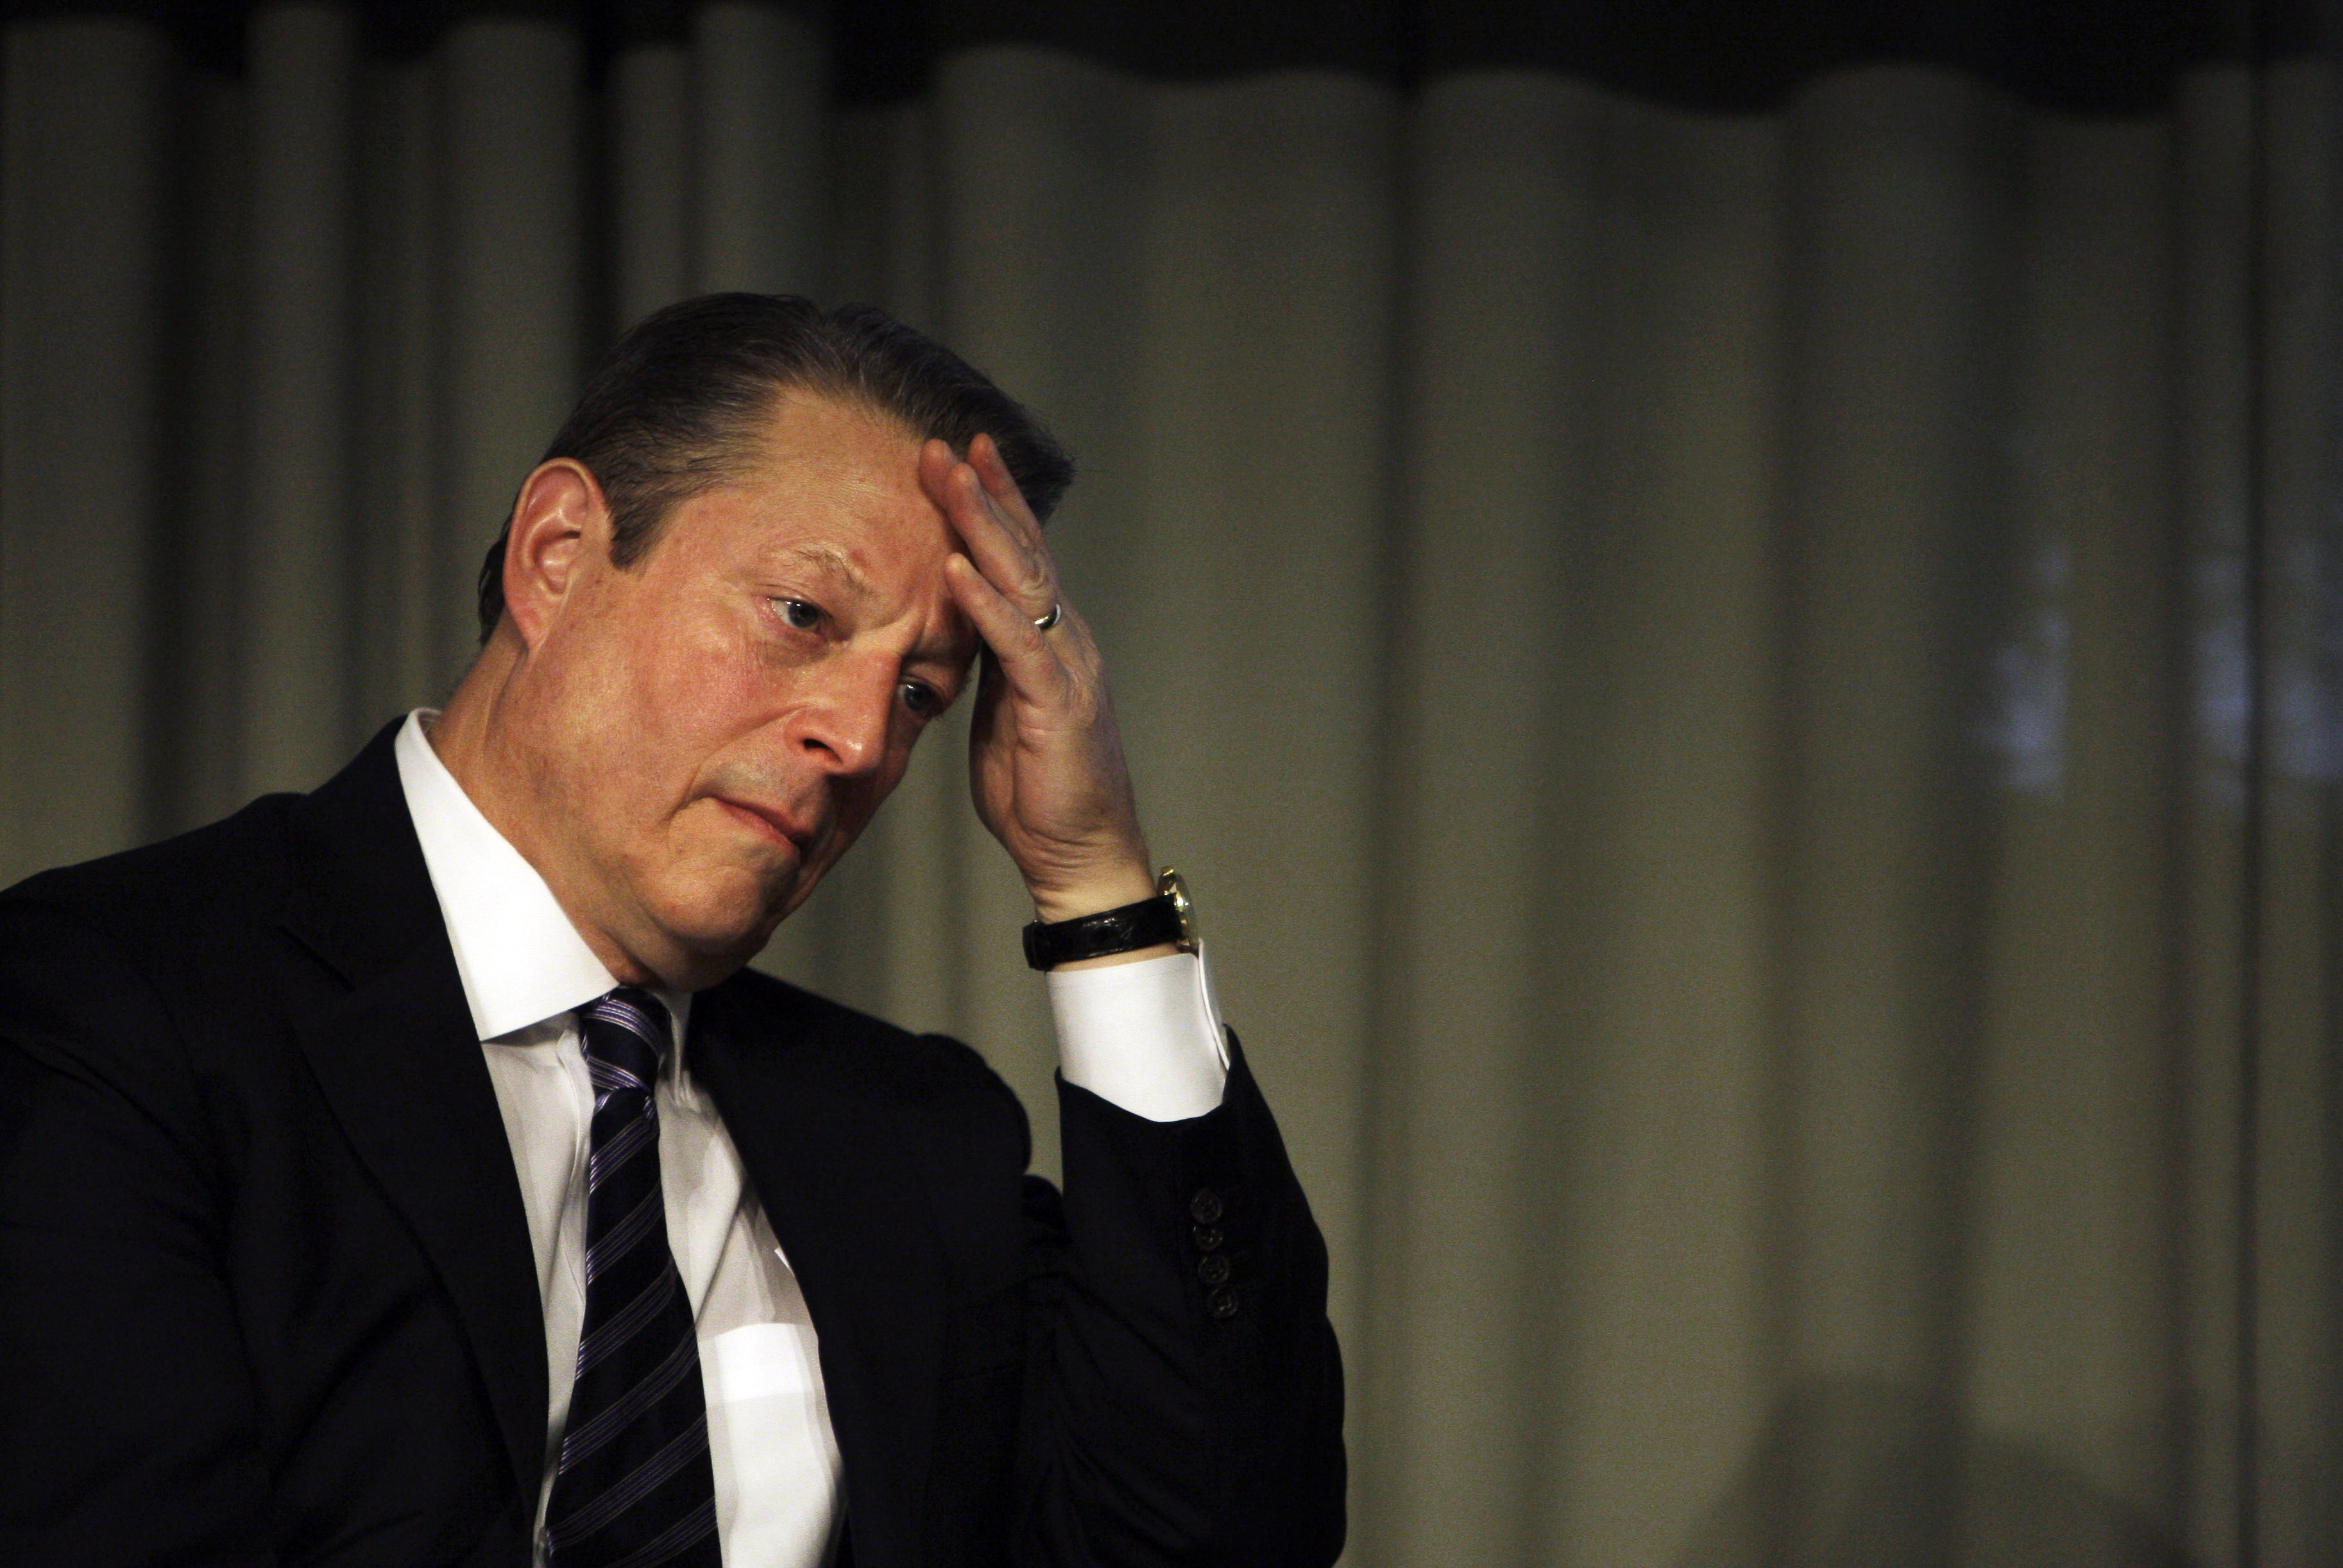 Men Gore förnekar fortfarande anklagelserna starkt.